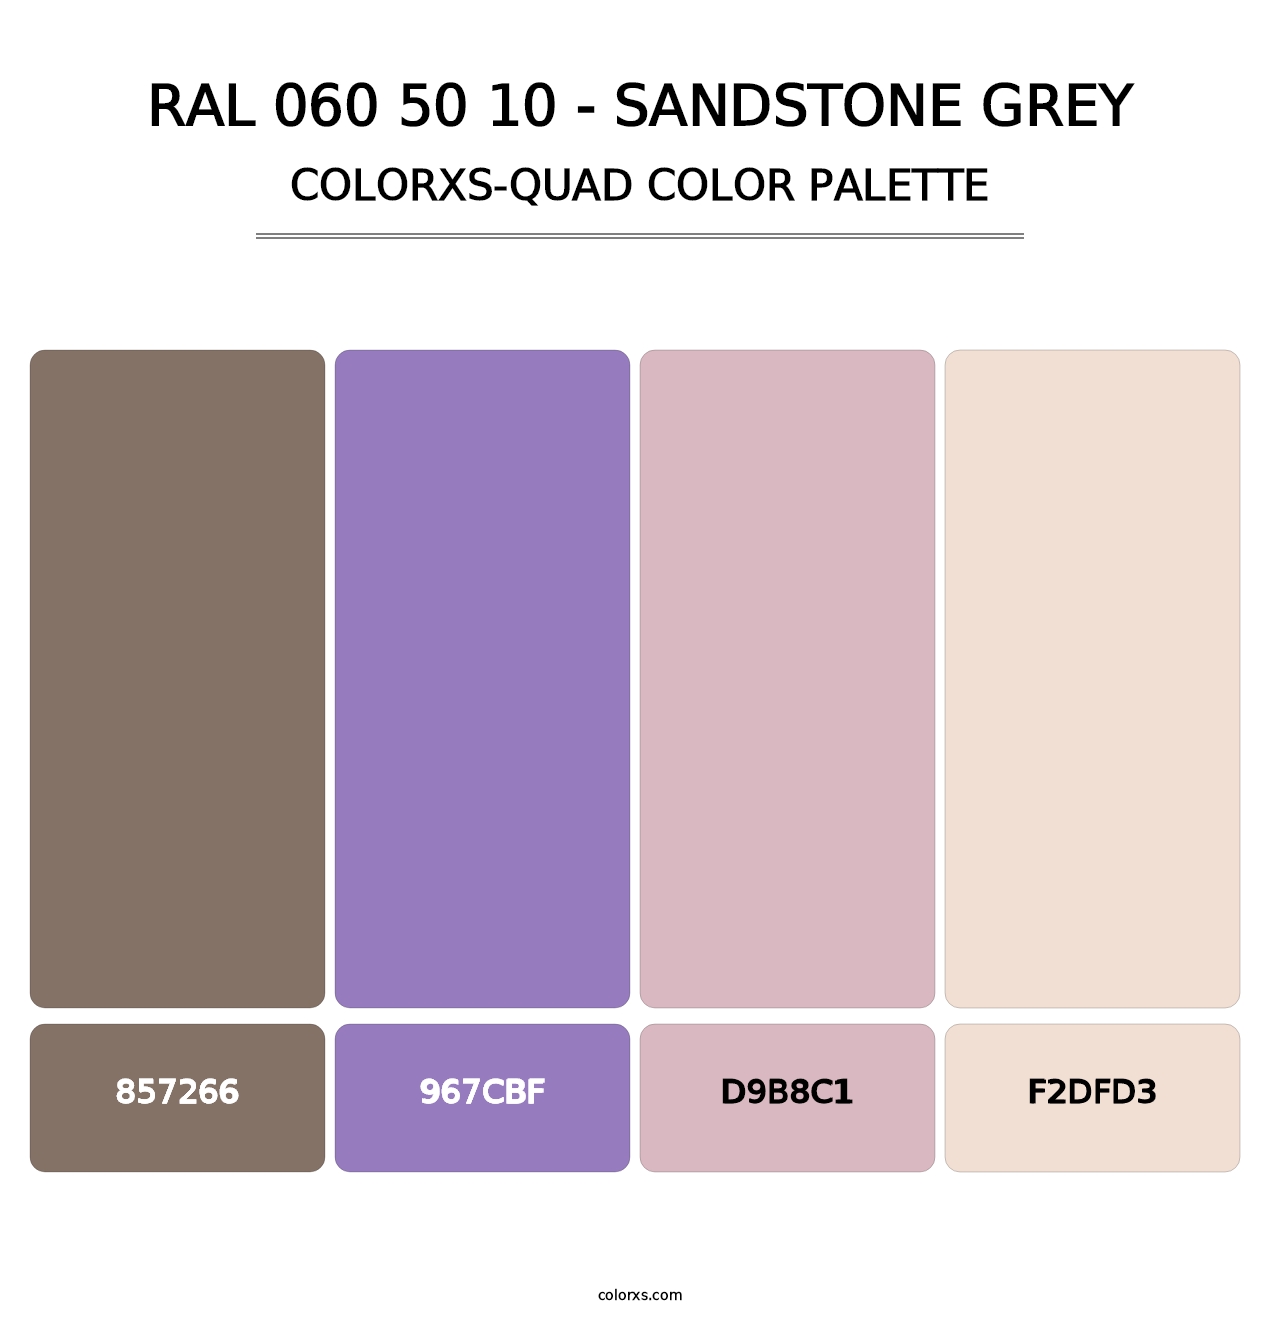 RAL 060 50 10 - Sandstone Grey - Colorxs Quad Palette